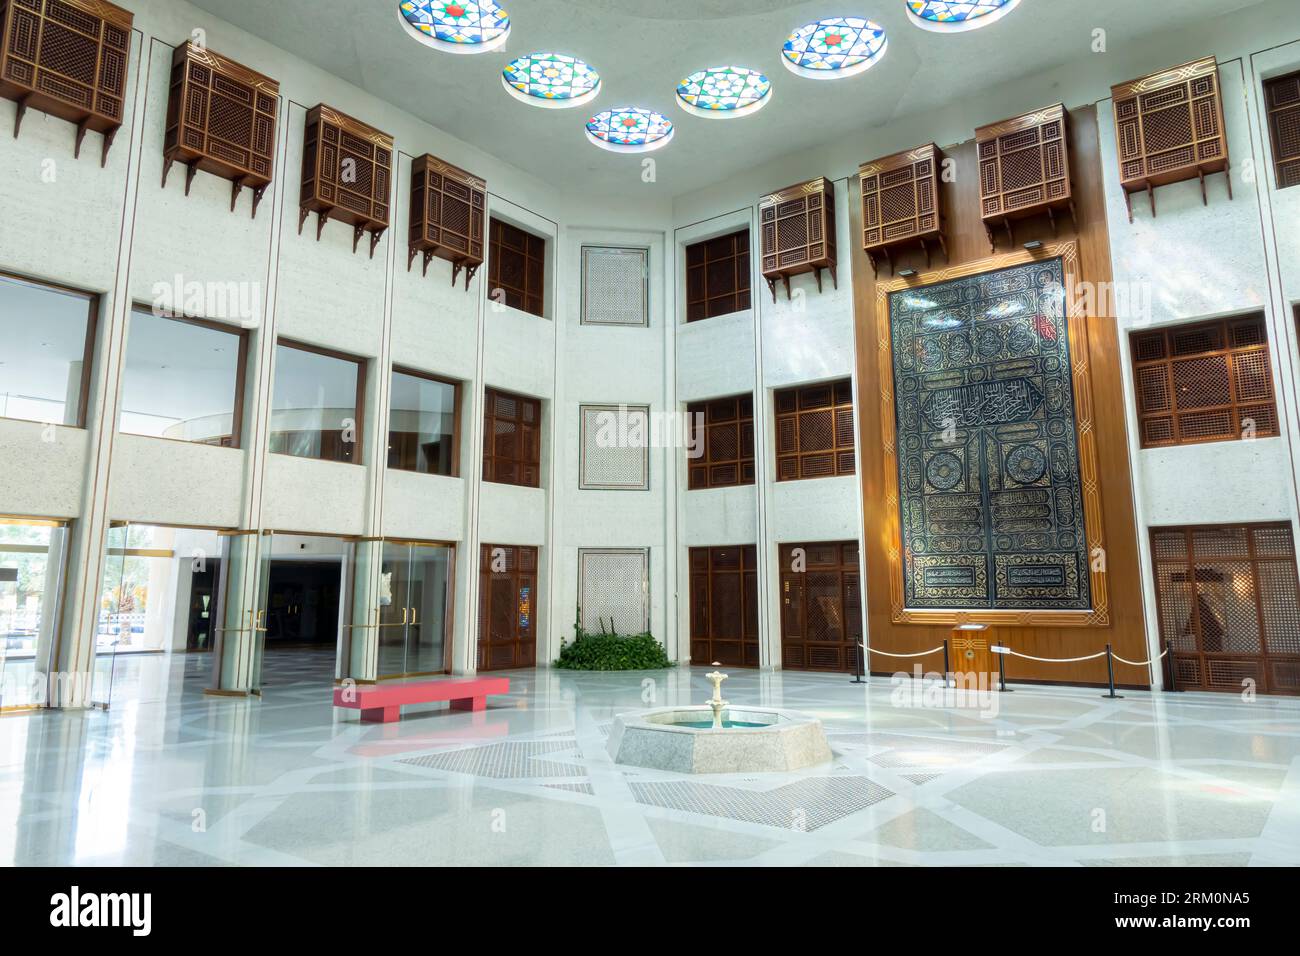 Beit Al Quran museum Bahrain interior Stock Photo